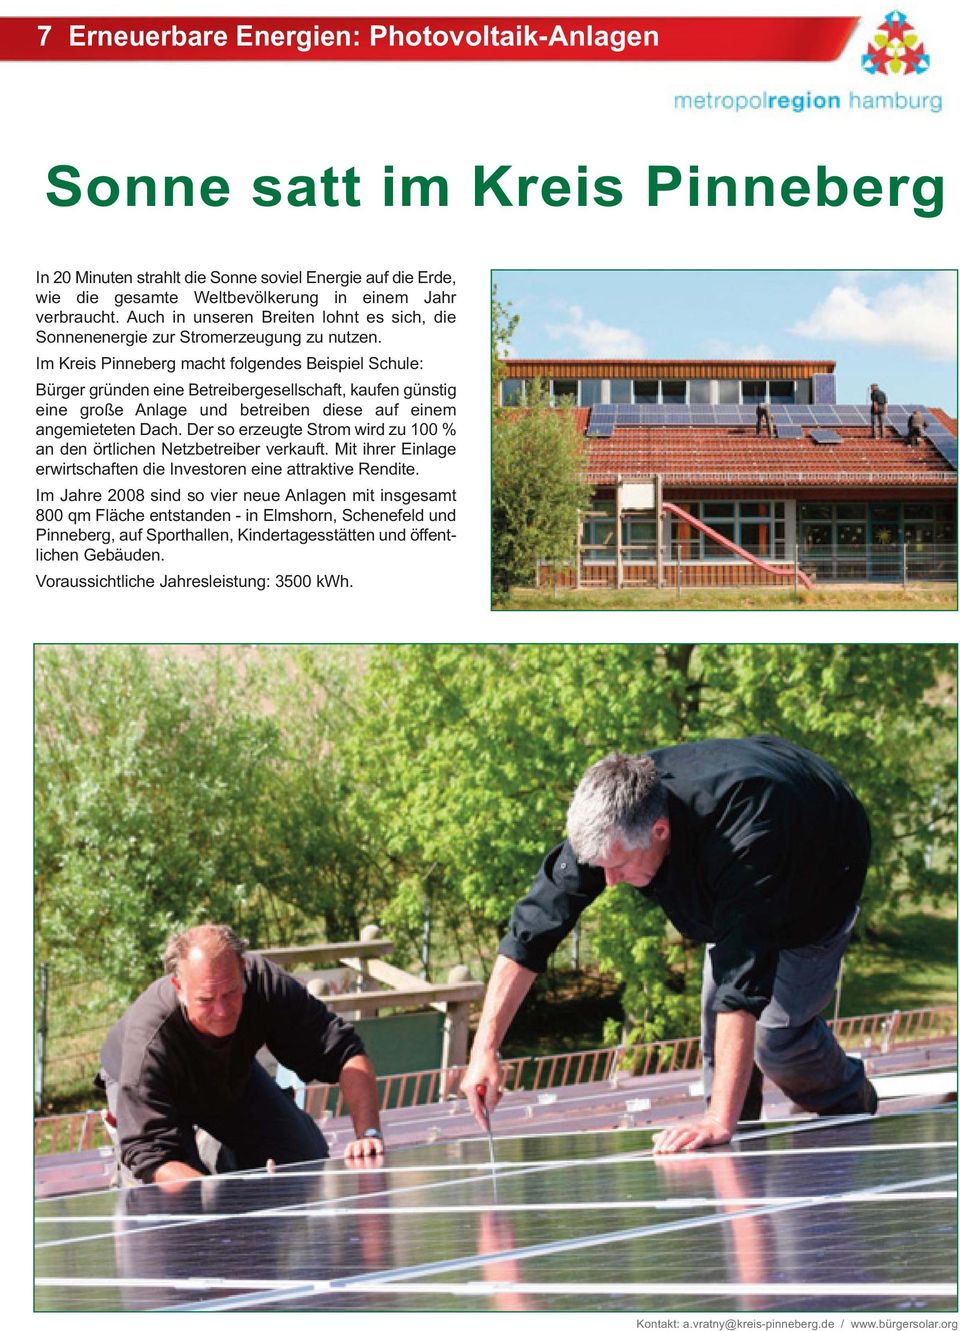 Im Kreis Pinneberg macht folgendes Beispiel Schule: Bürger gründen eine Betreibergesellschaft, kaufen günstig eine große Anlage und betreiben diese auf einem angemieteten Dach.